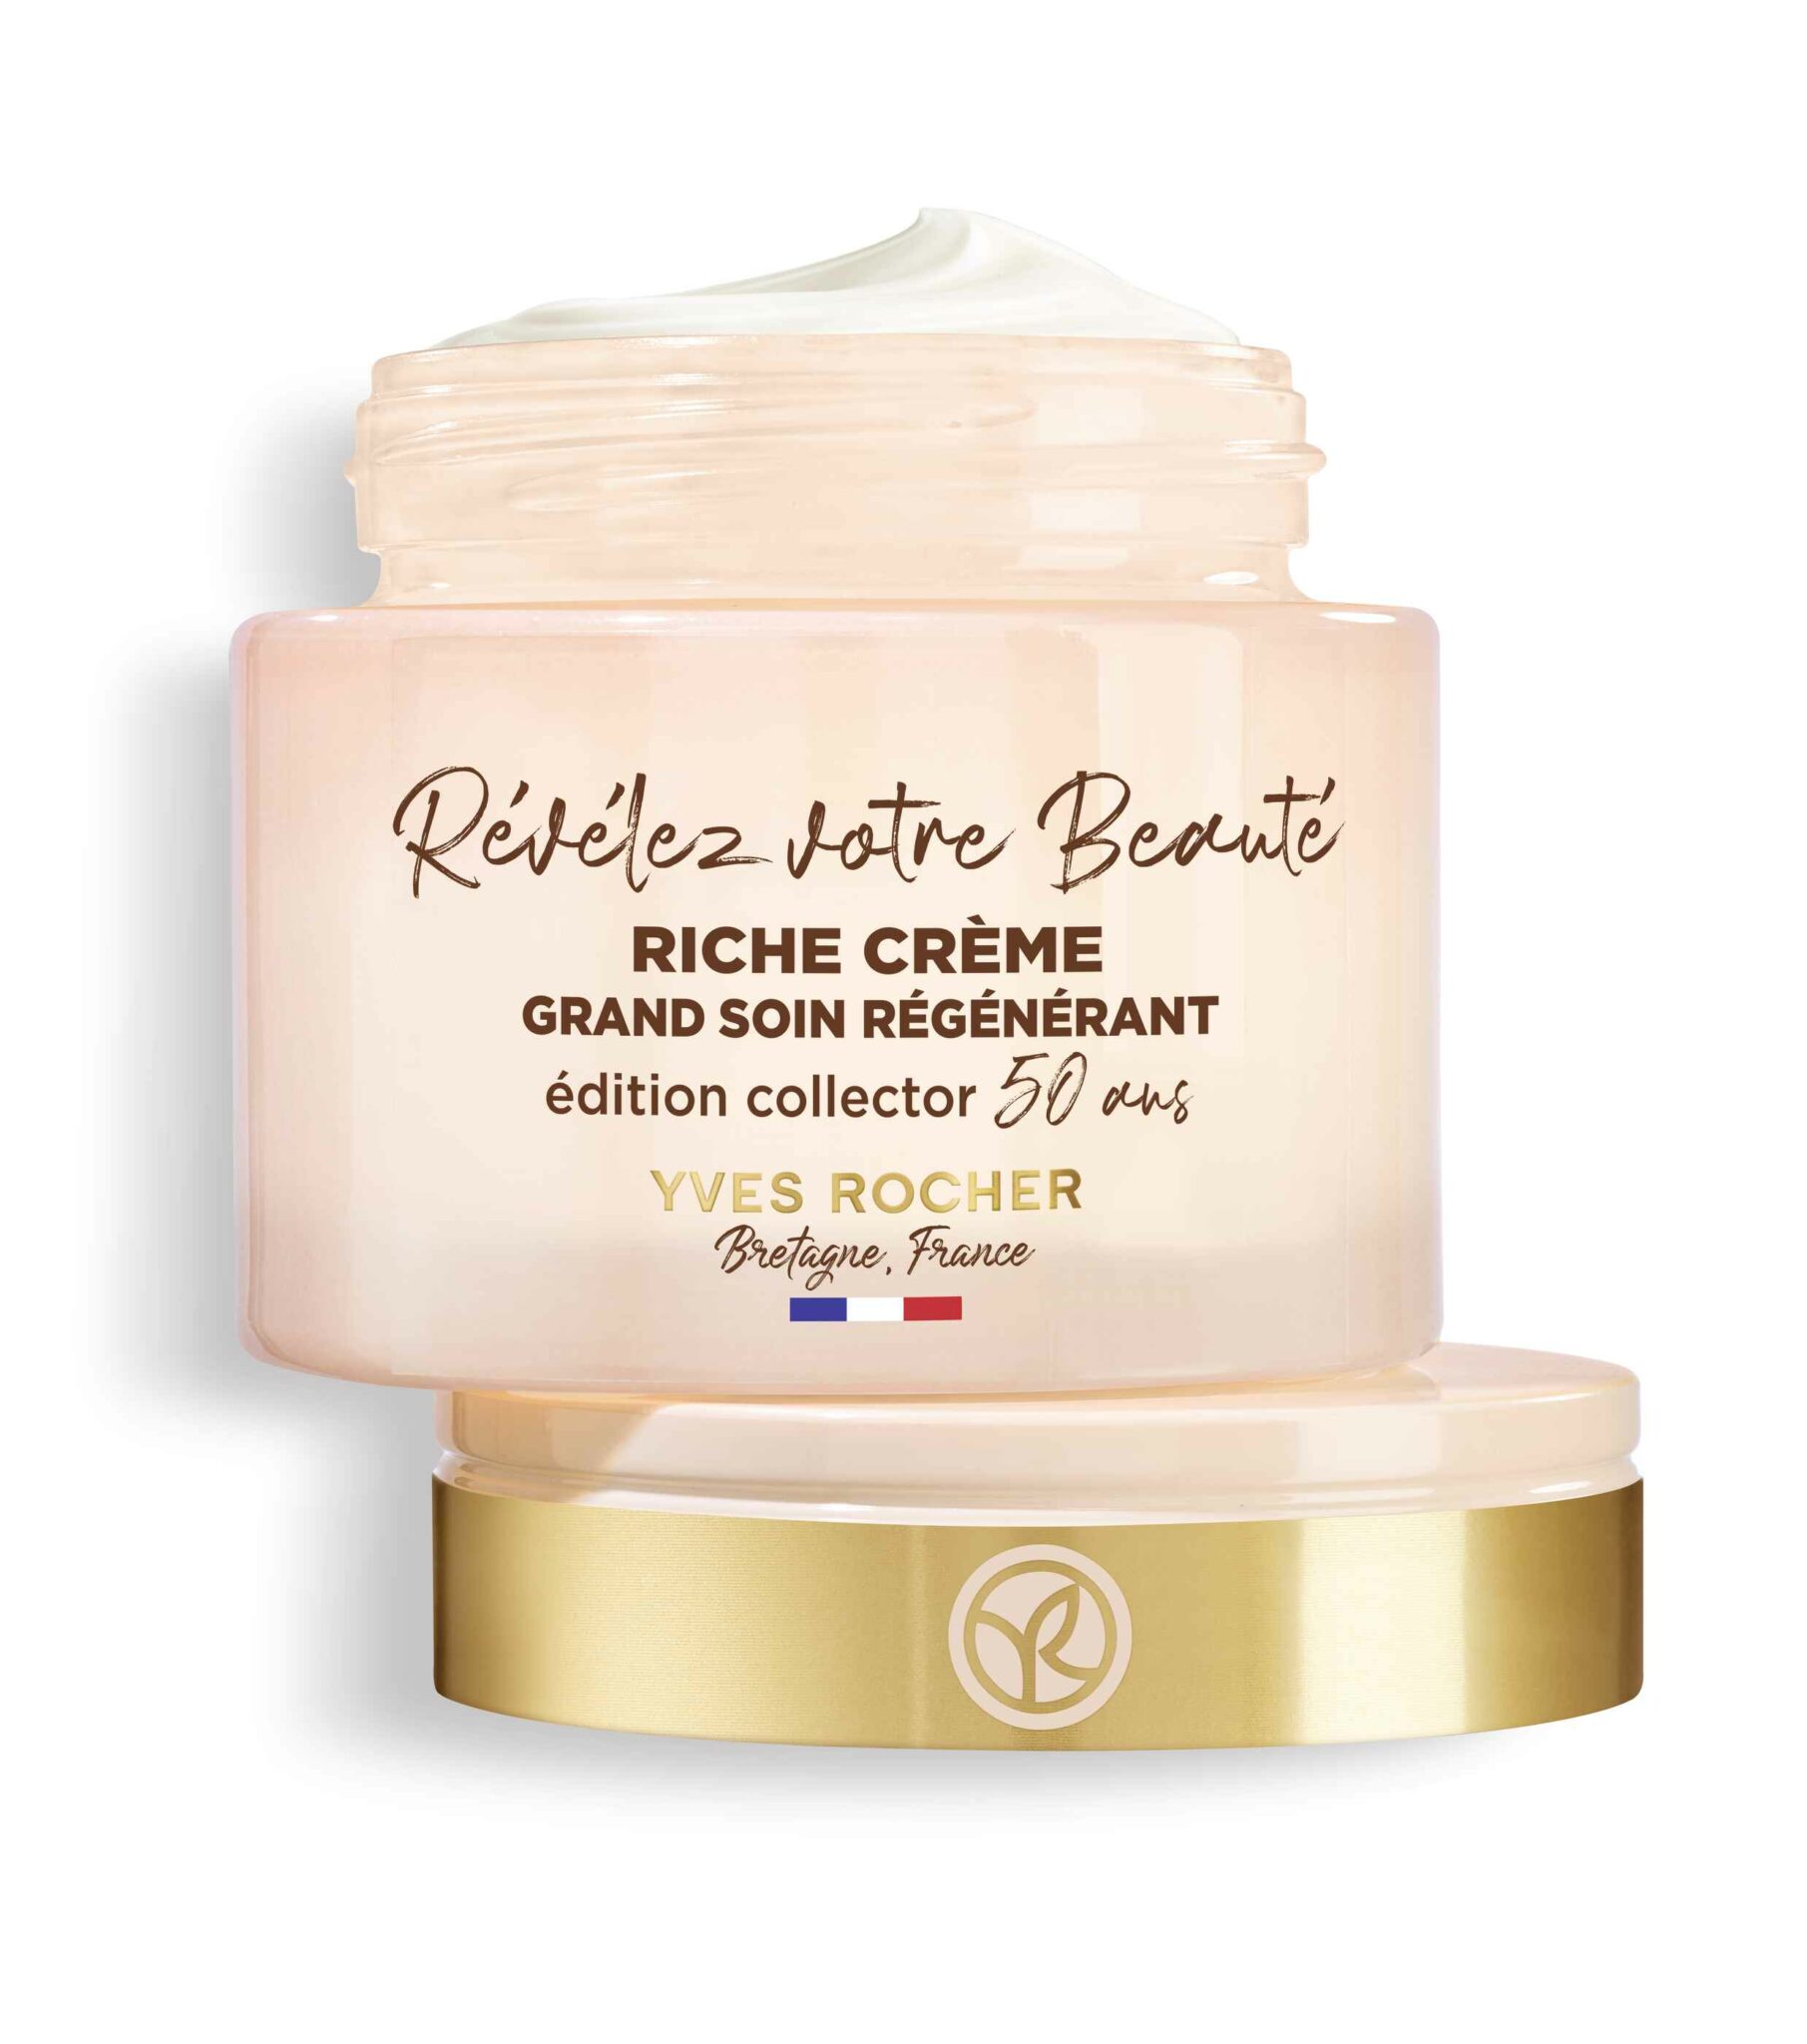 Відомому крему Riche Crème Yves Rocher виповнюється 50 років.